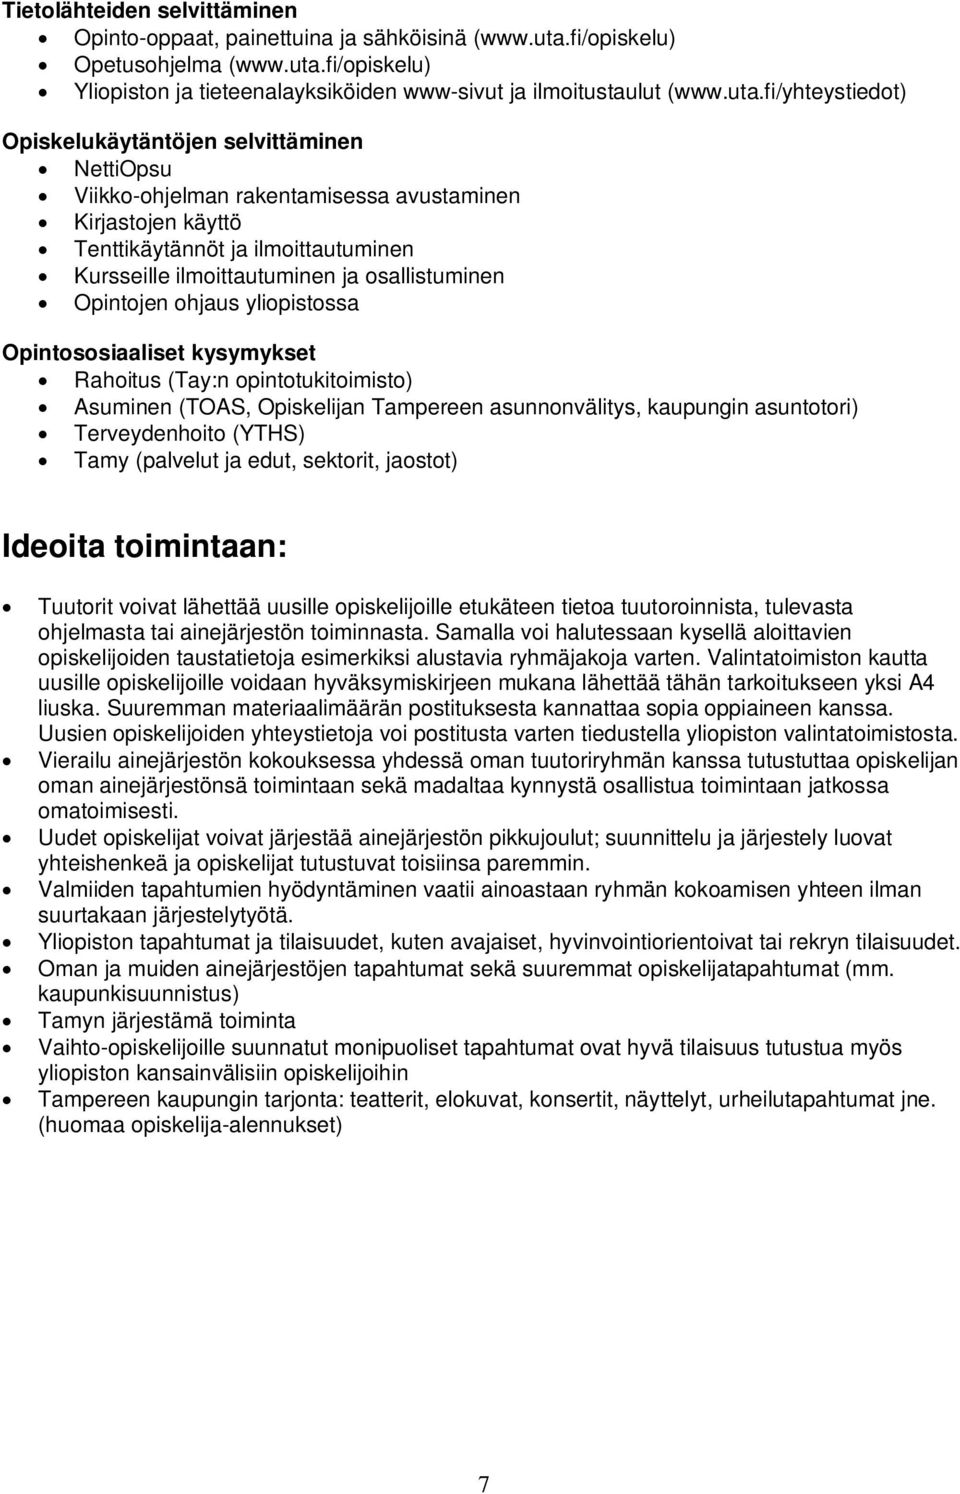 fi/opiskelu) Yliopiston ja tieteenalayksiköiden www-sivut ja ilmoitustaulut (www.uta.